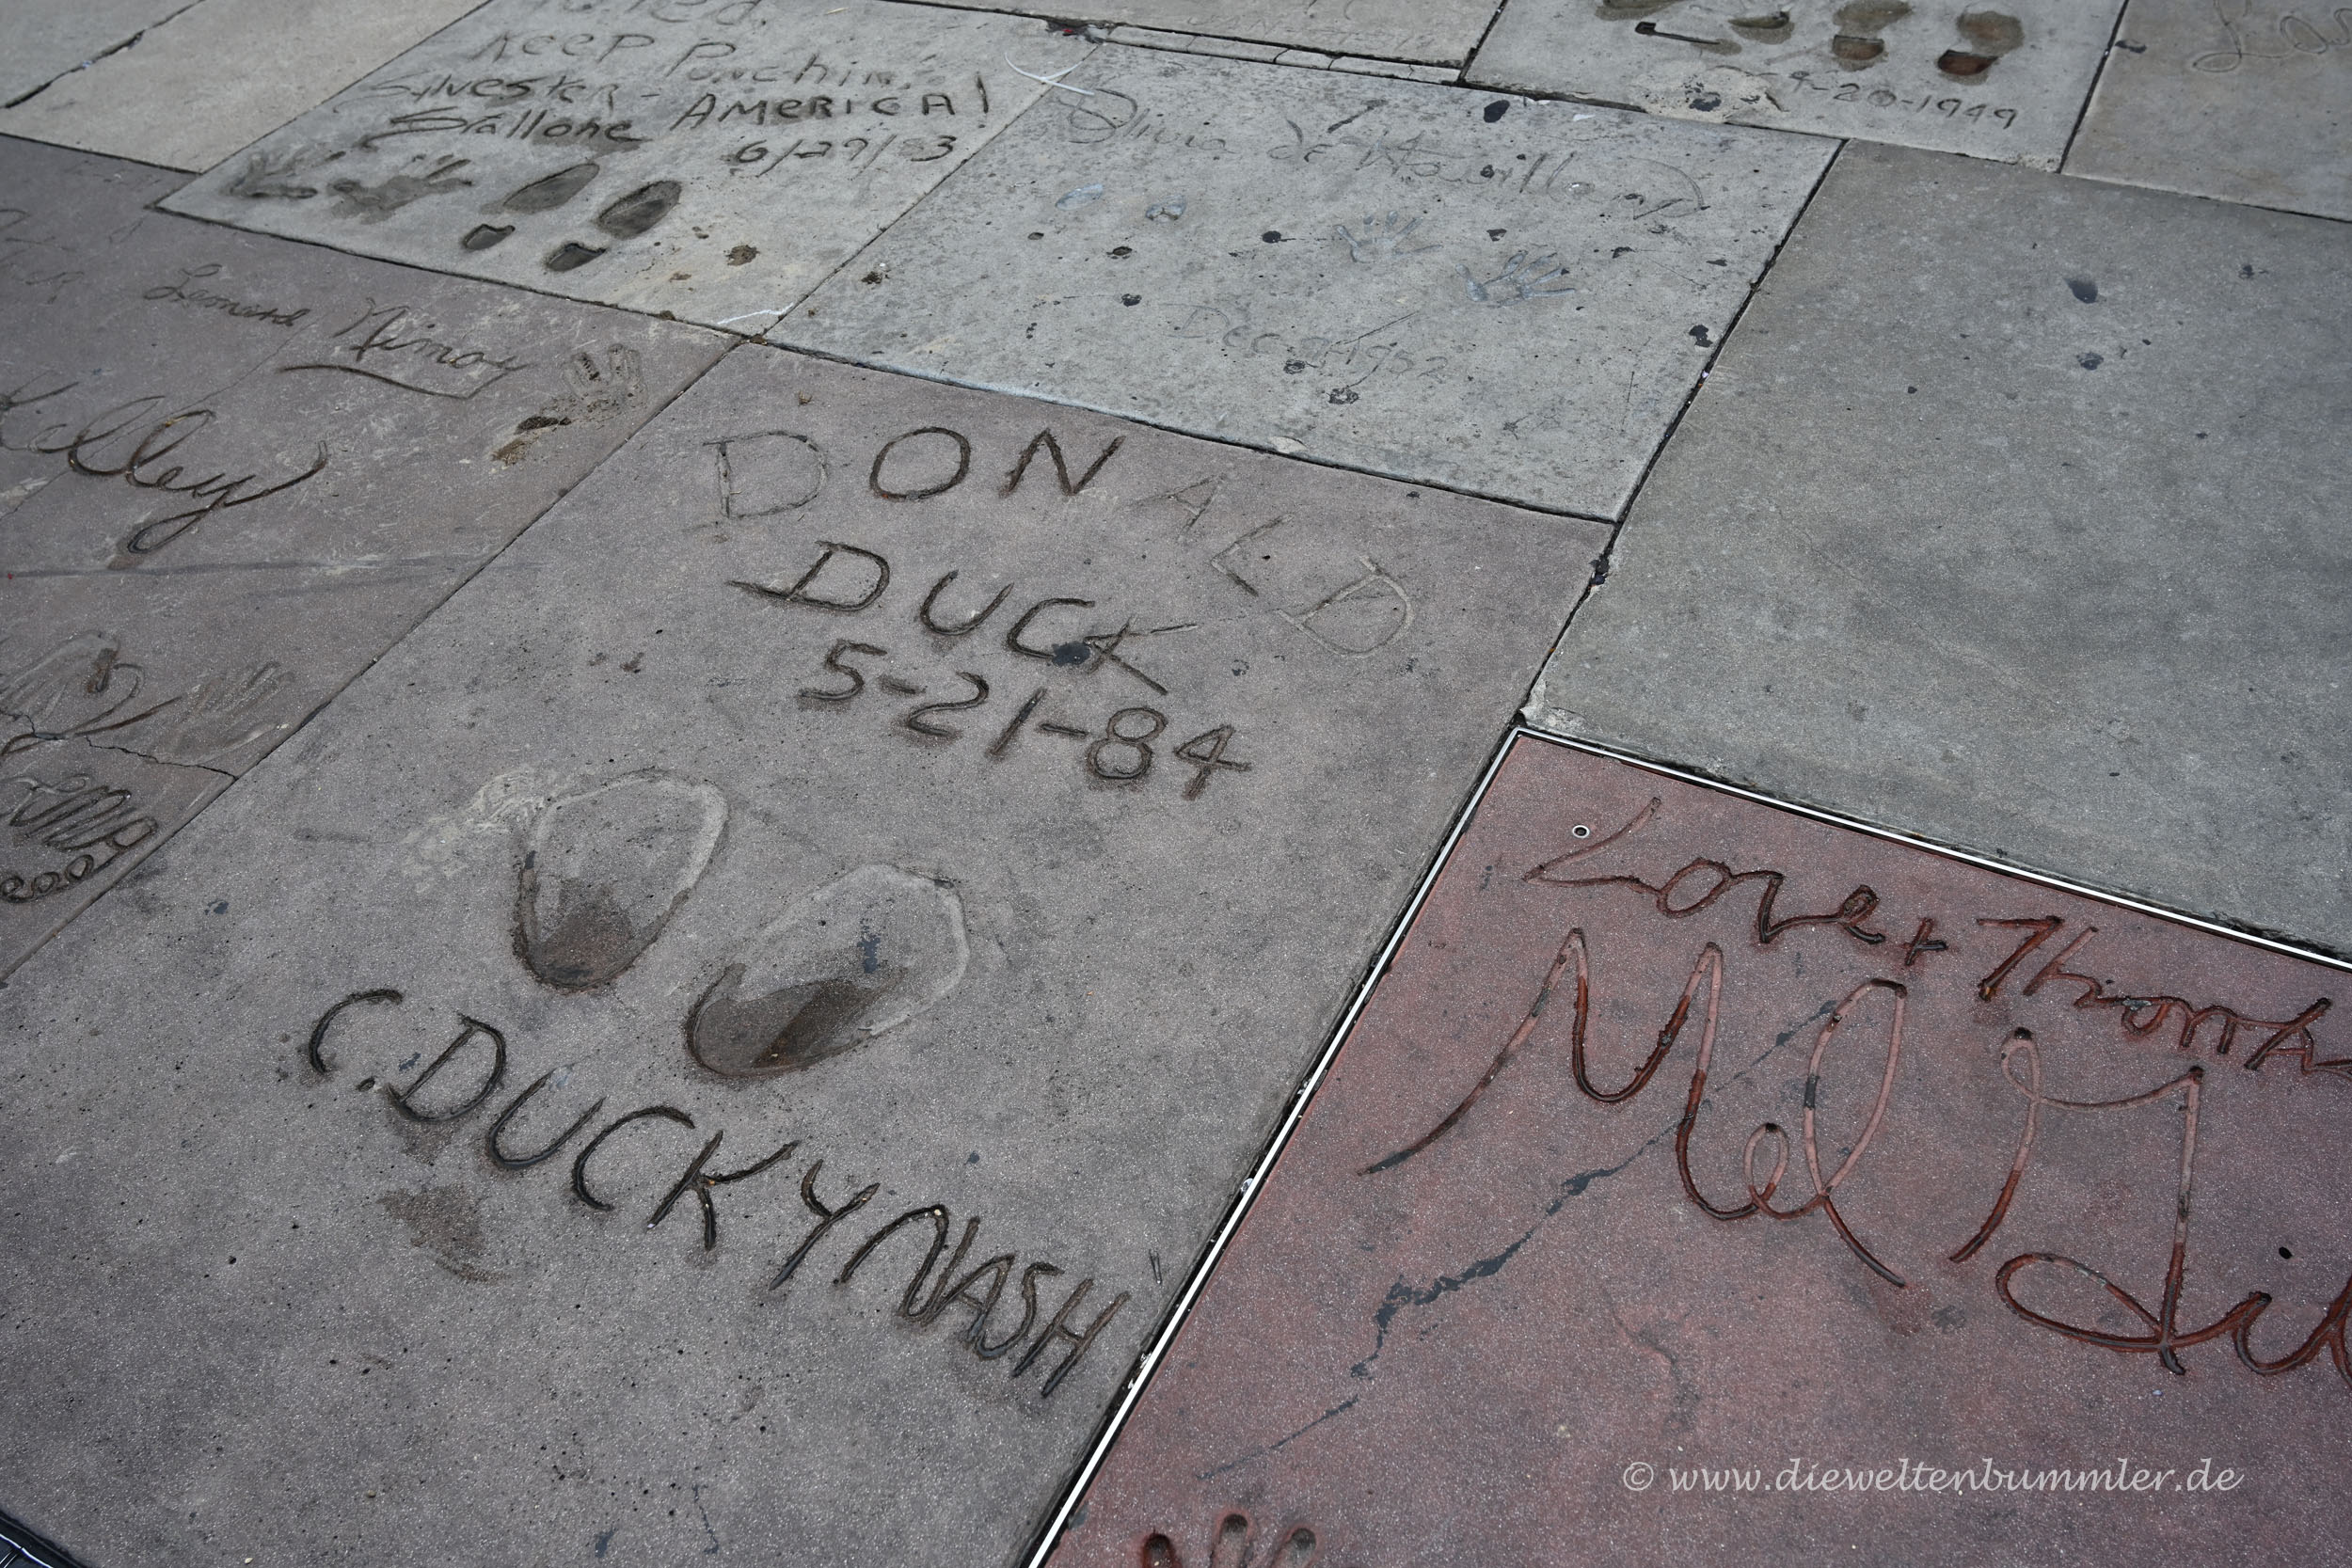 Fußabdrücke von Donald Duck